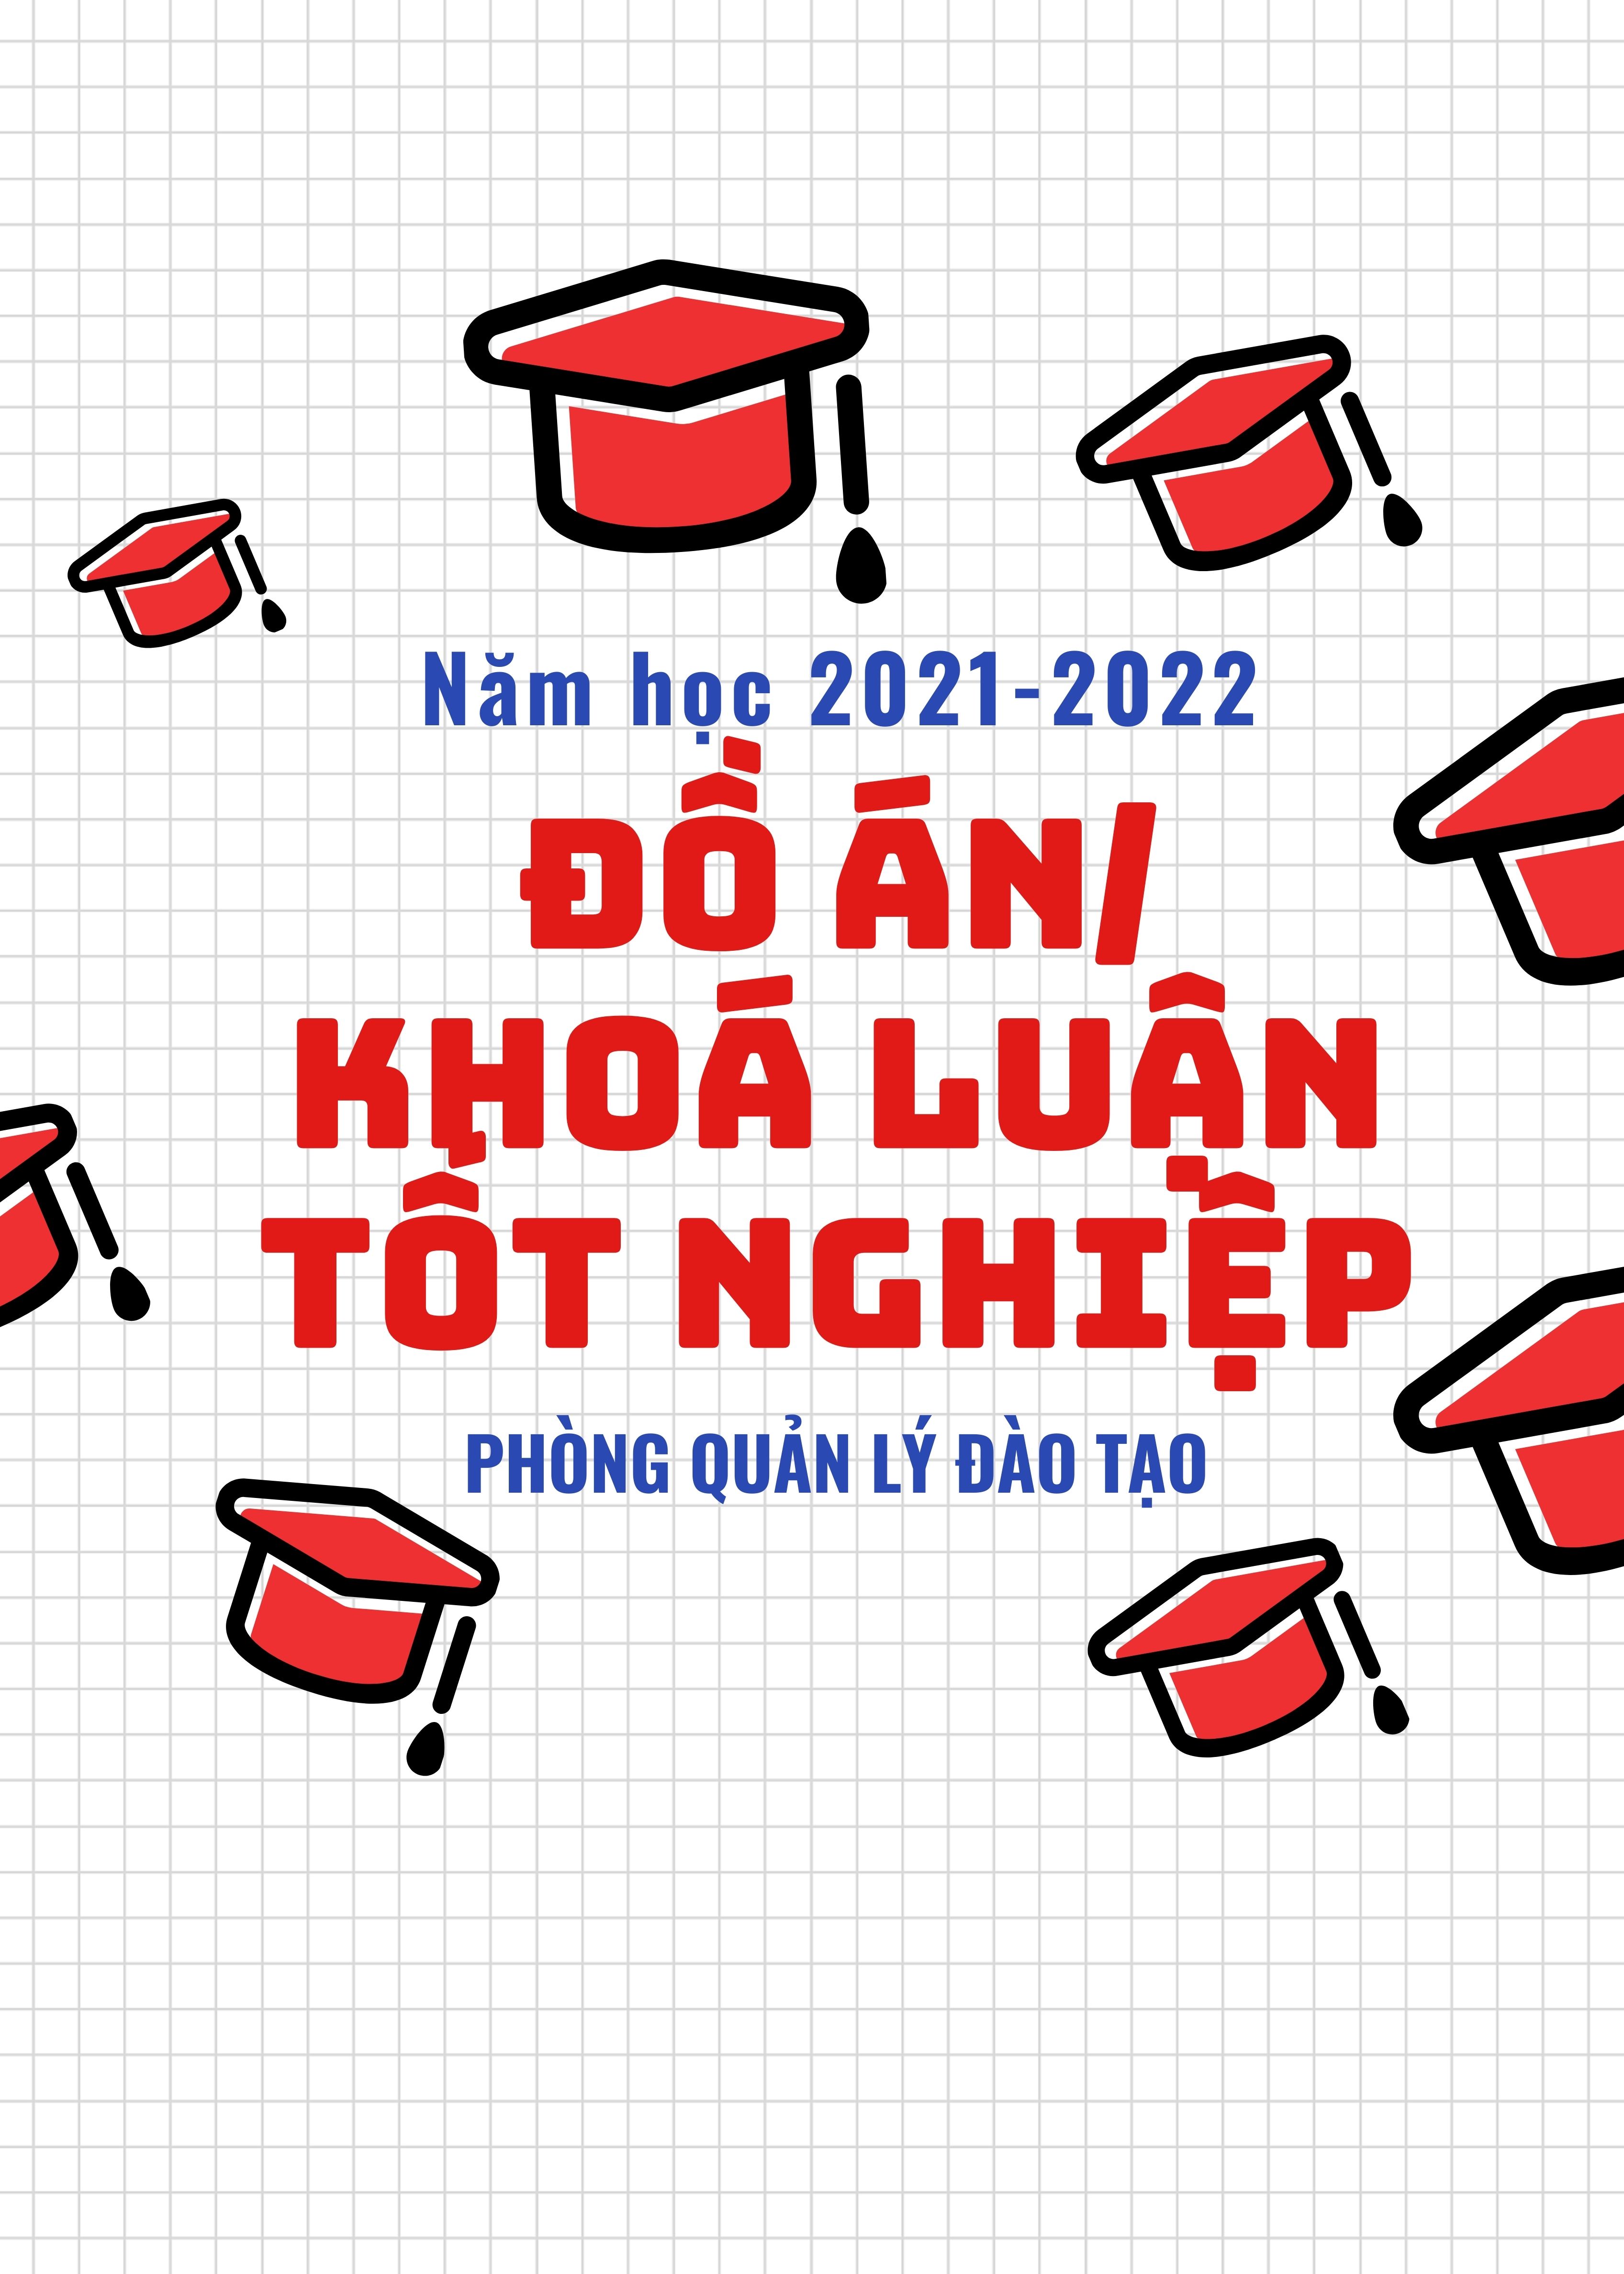 Quyết định về việc phê duyệt sinh viên hệ chính quy và giảng viên hướng dẫn làm Đồ án, khóa luận tốt nghiệp năm học 2021-2022